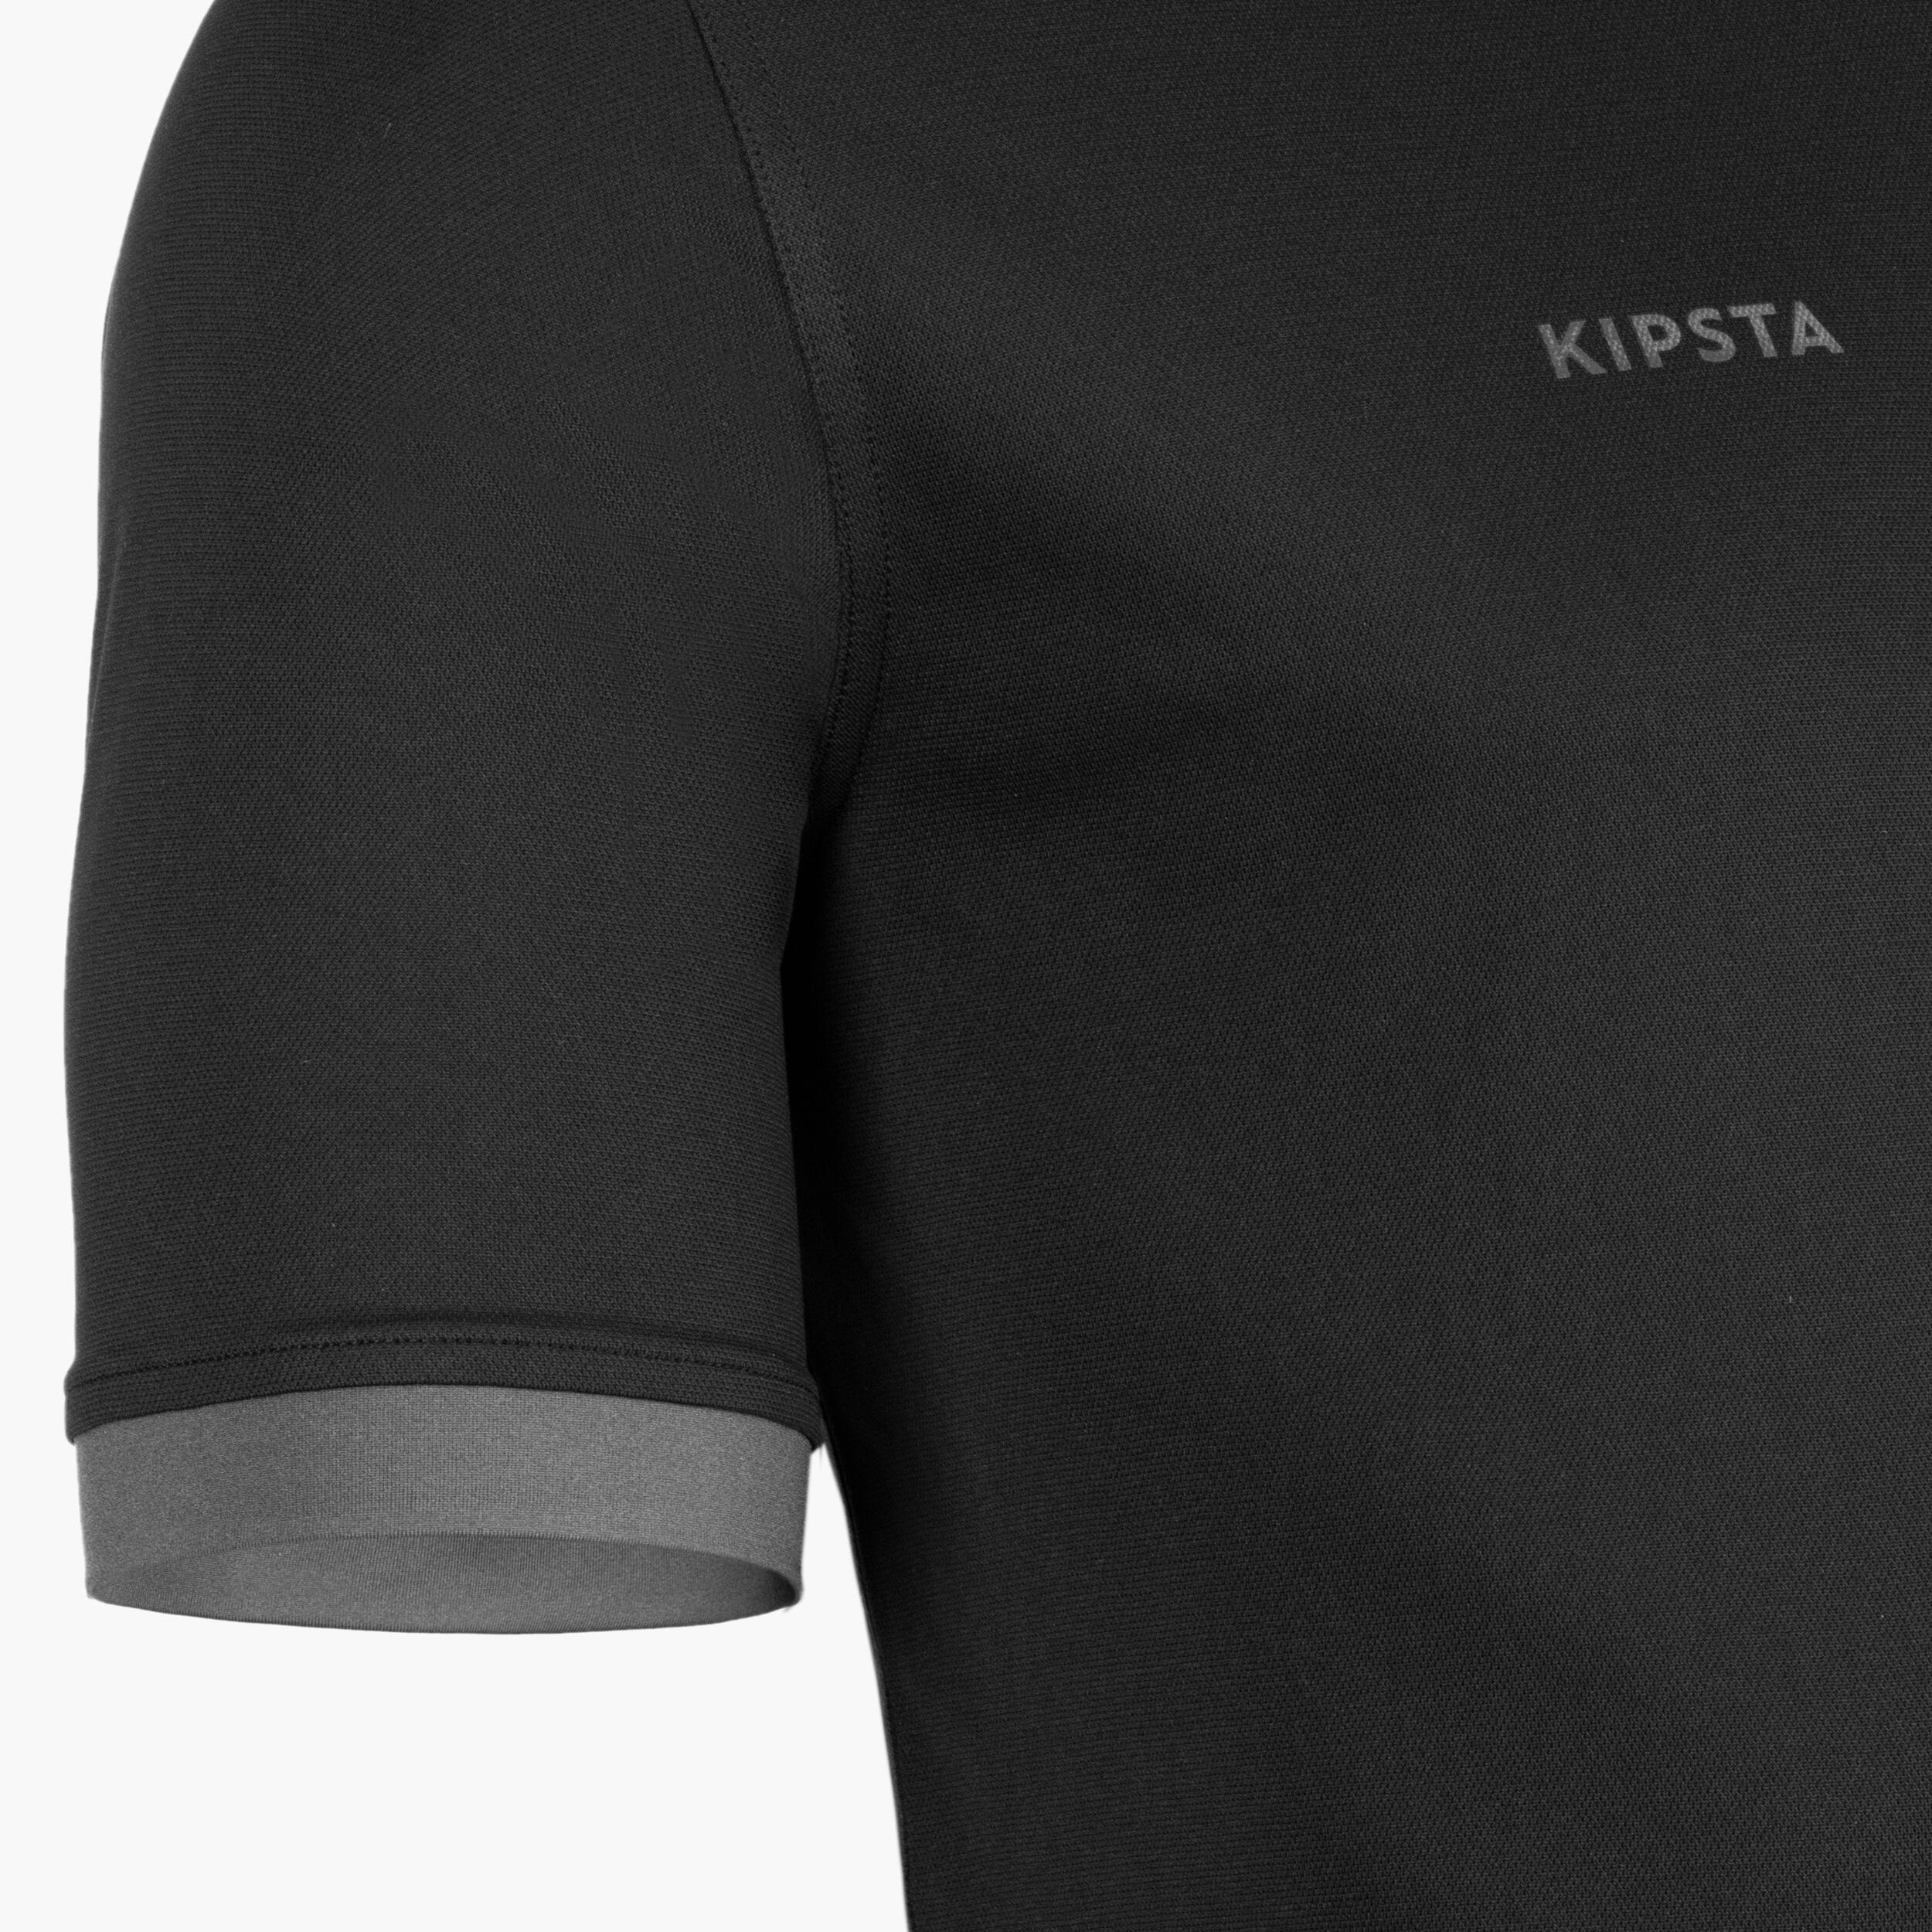 Men's Short-Sleeved Rugby Shirt R100 - Black/Grey 5/5